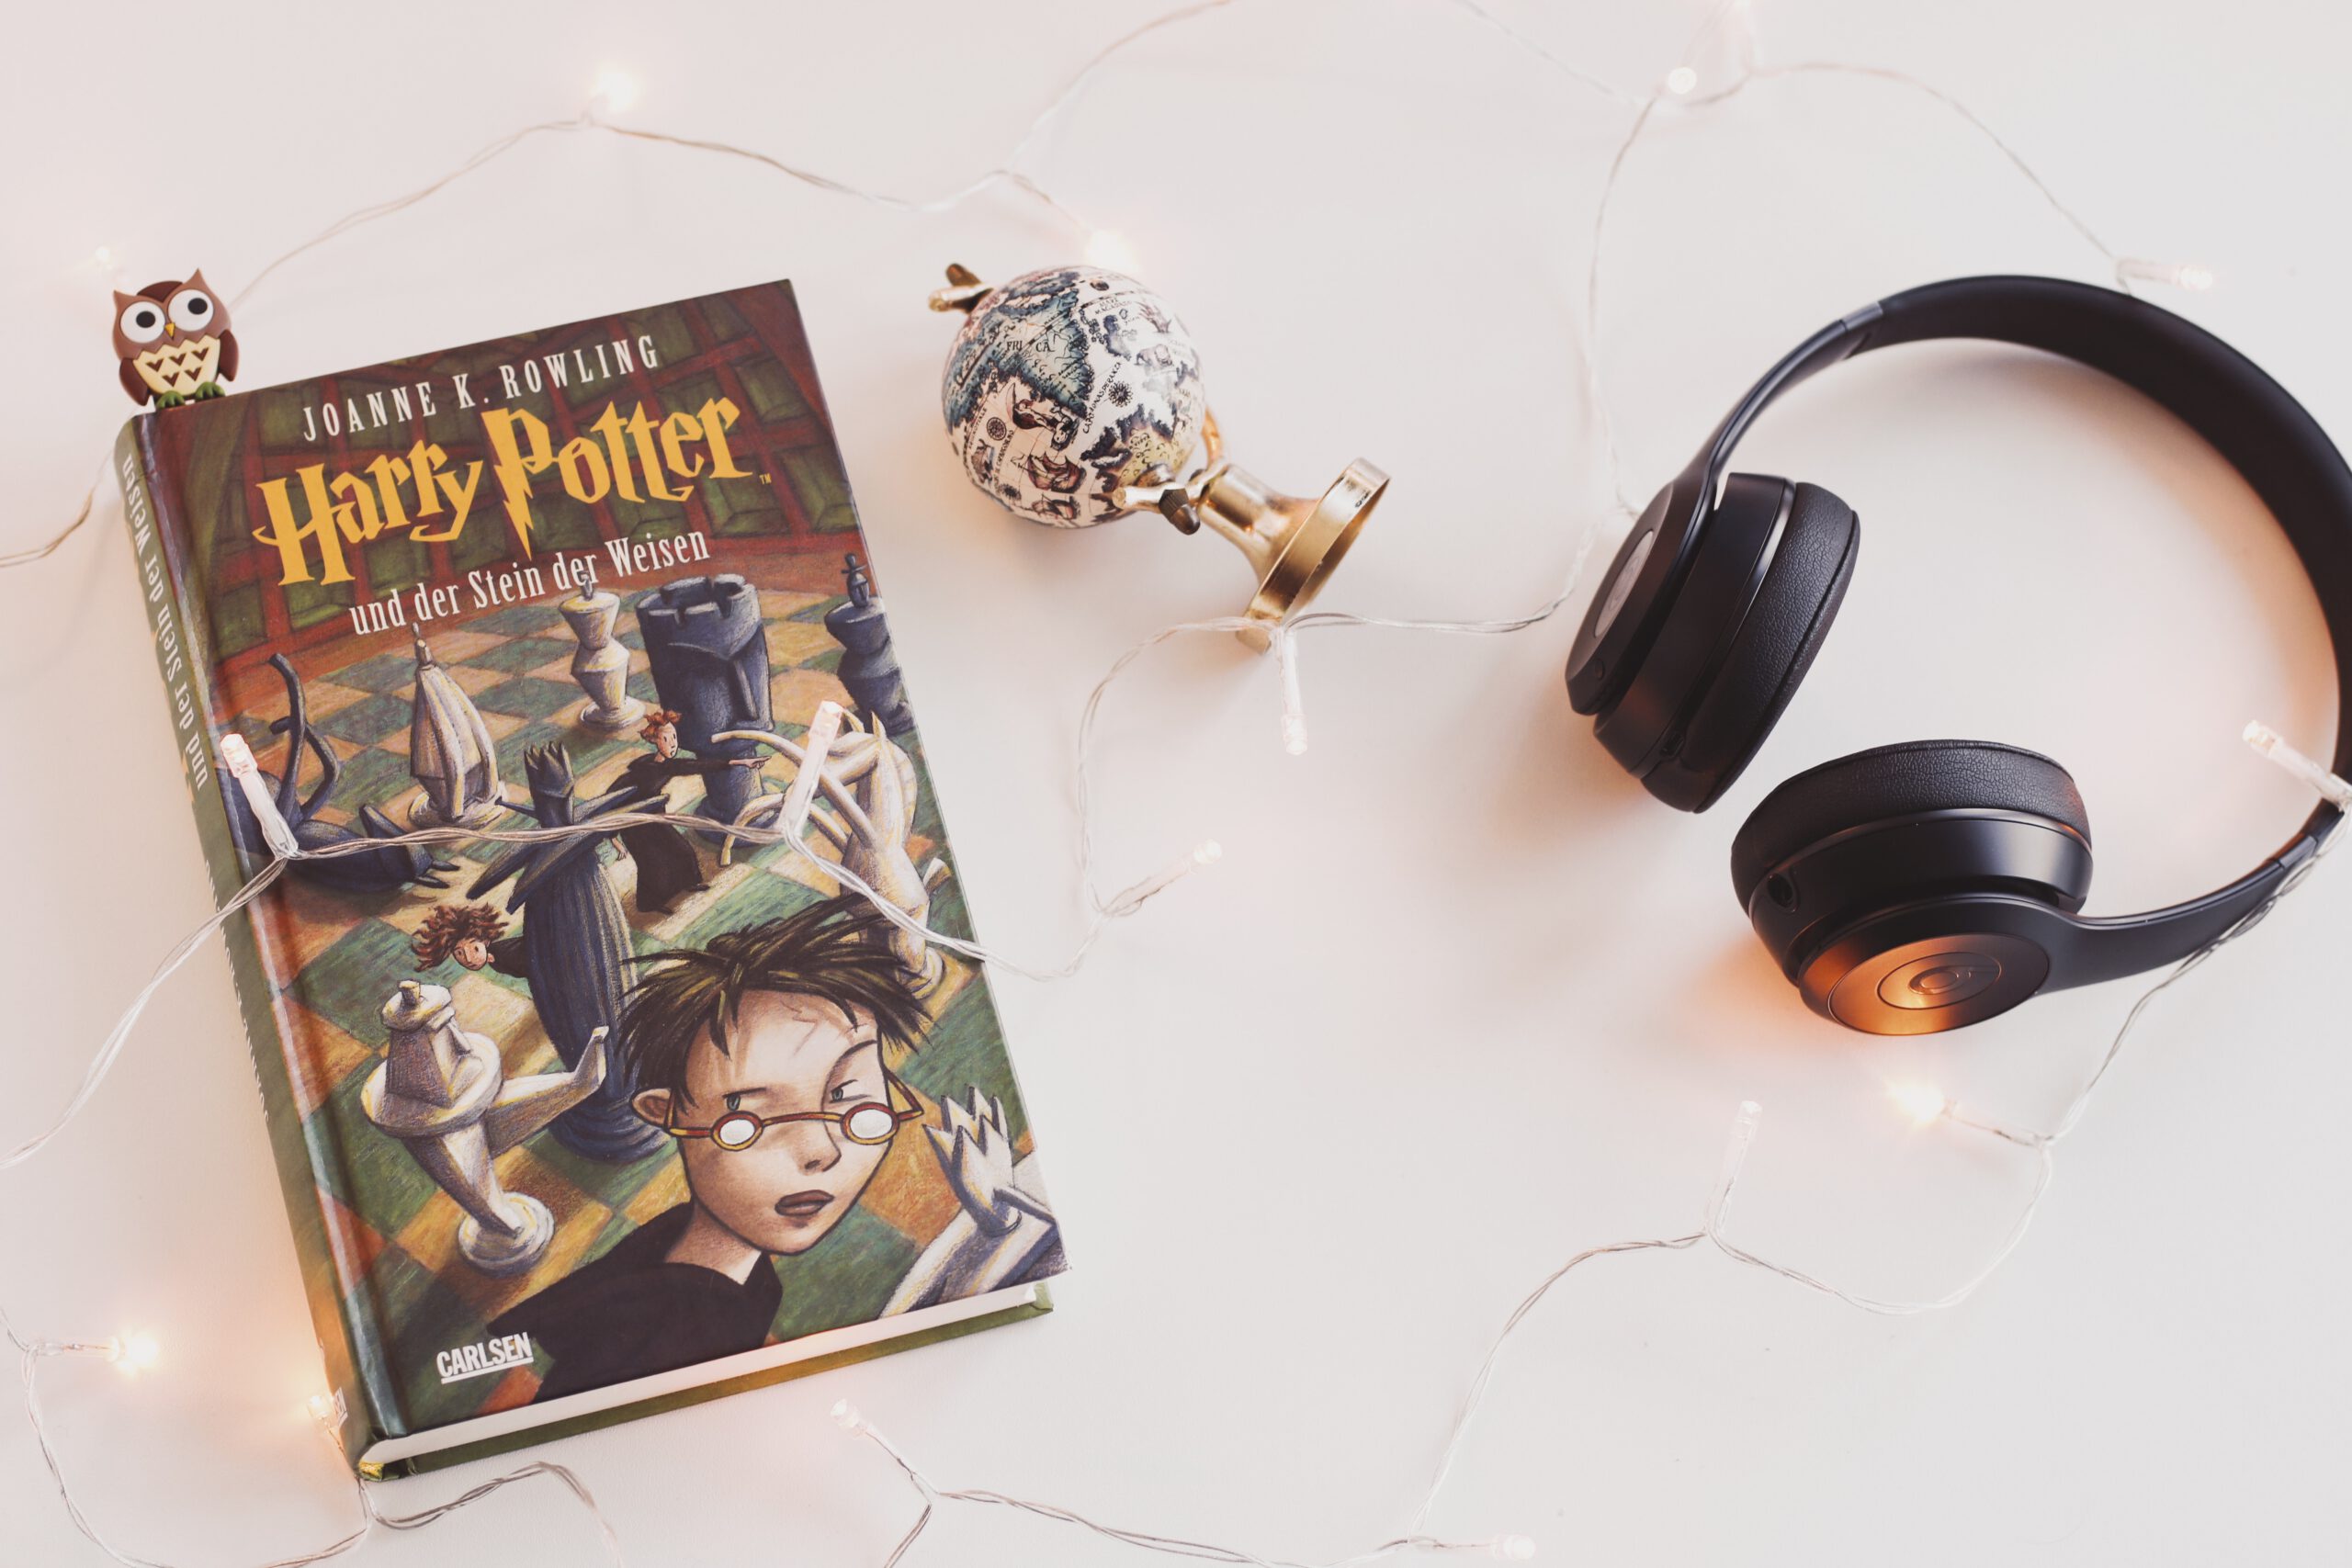 Książka o Harrym Potterze i słuchawki